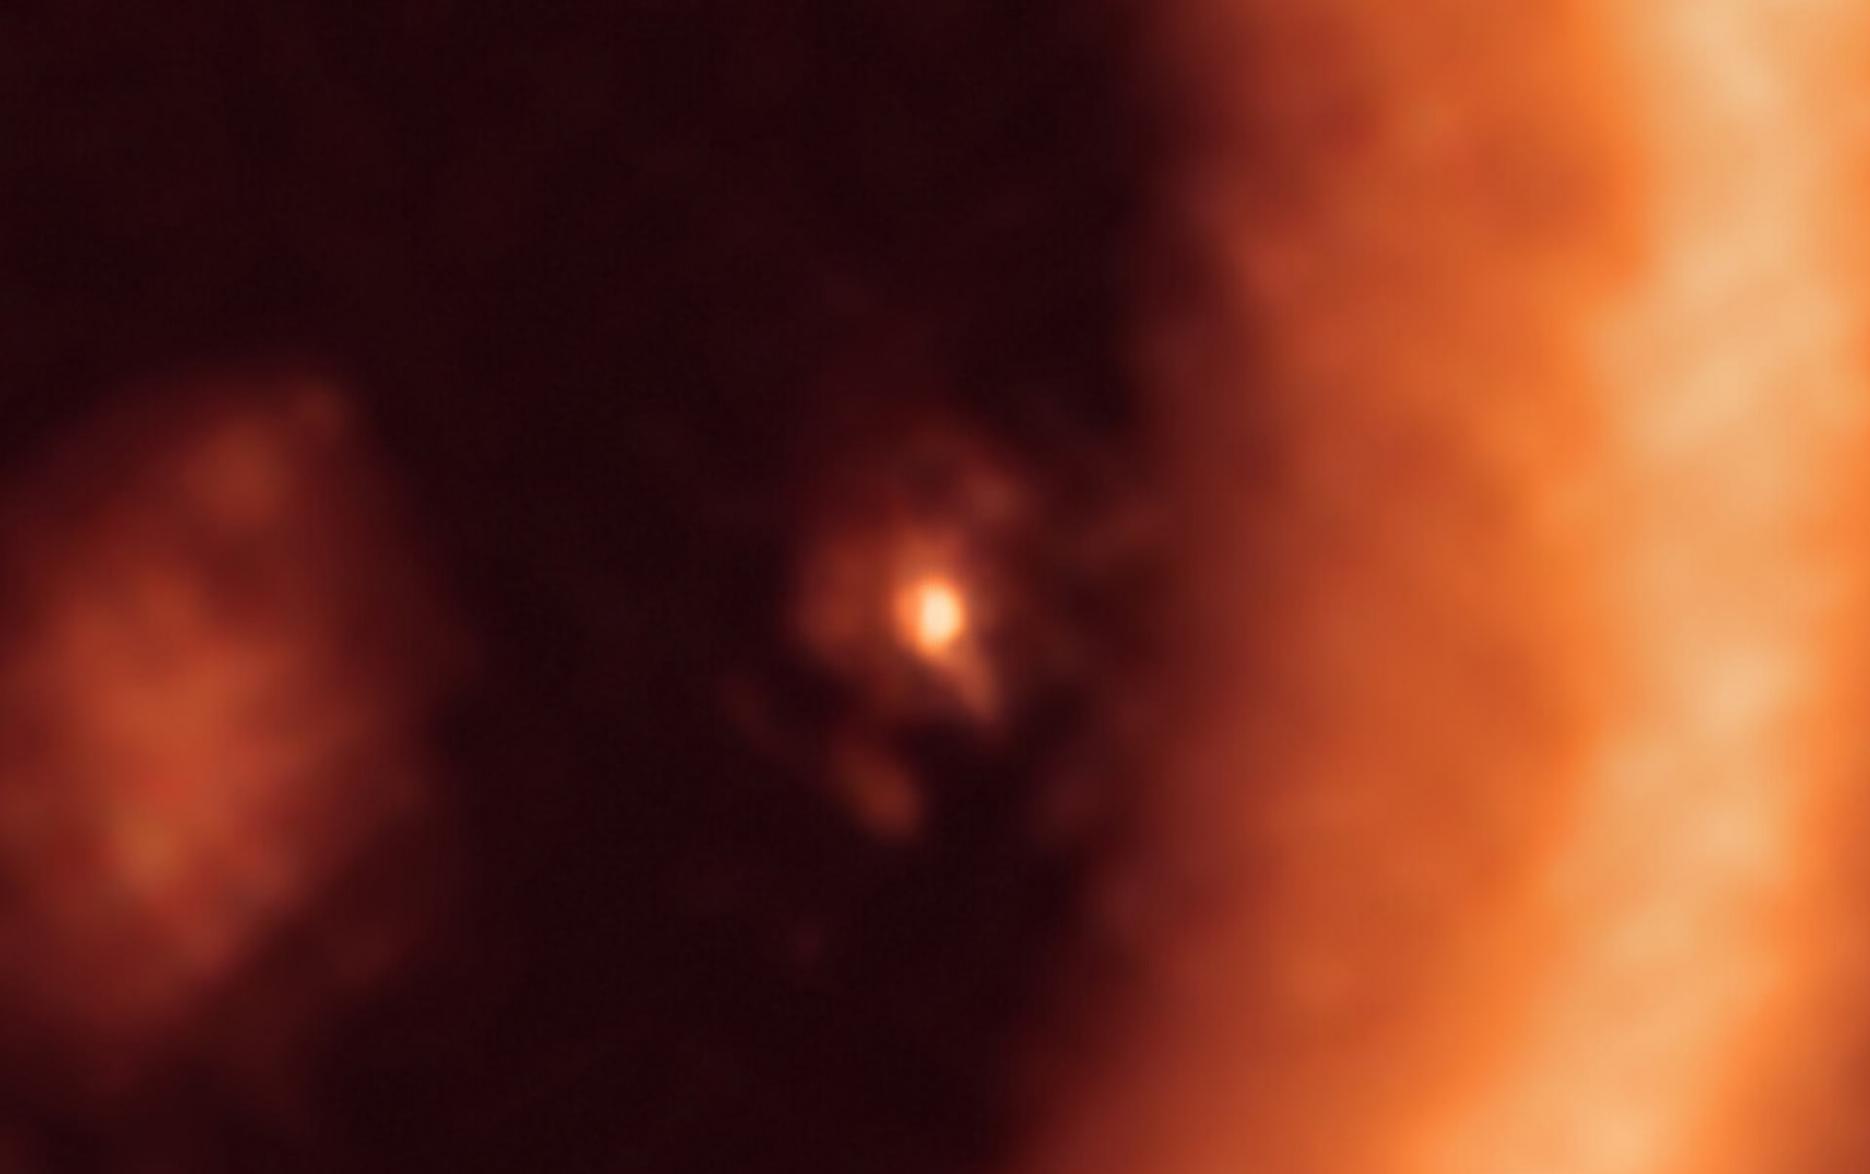 恒星PDS70（中心）和行星PDS 70c（恒星右侧的点），被一个圆盘包围。图片来源：ALMA /Benisty等